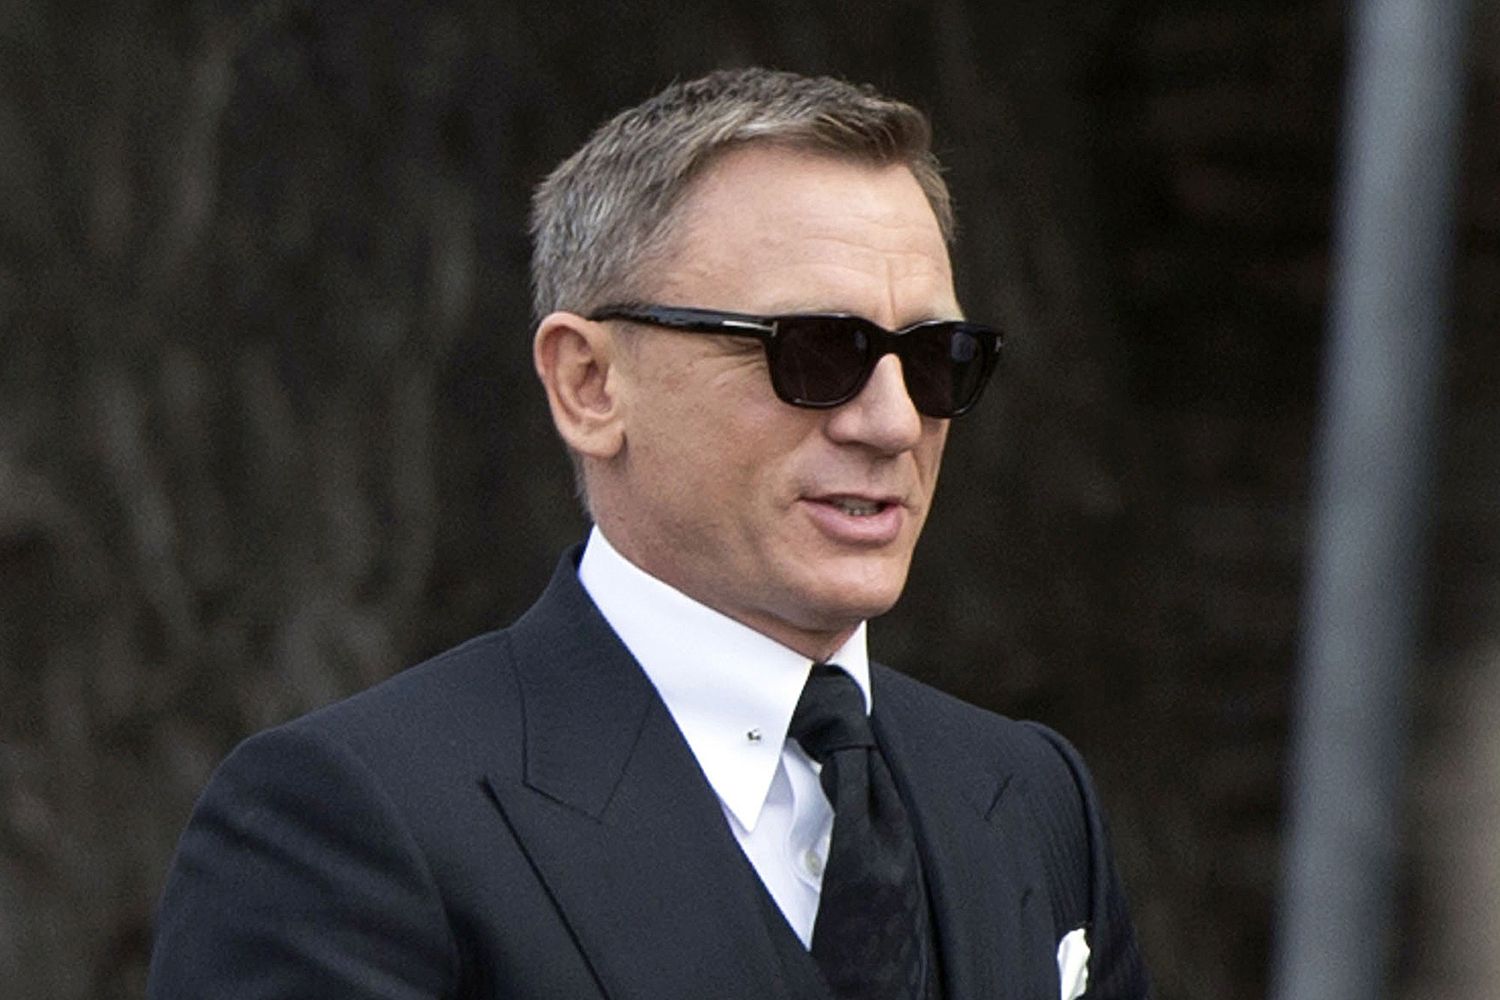 Pictures of Daniel Craig